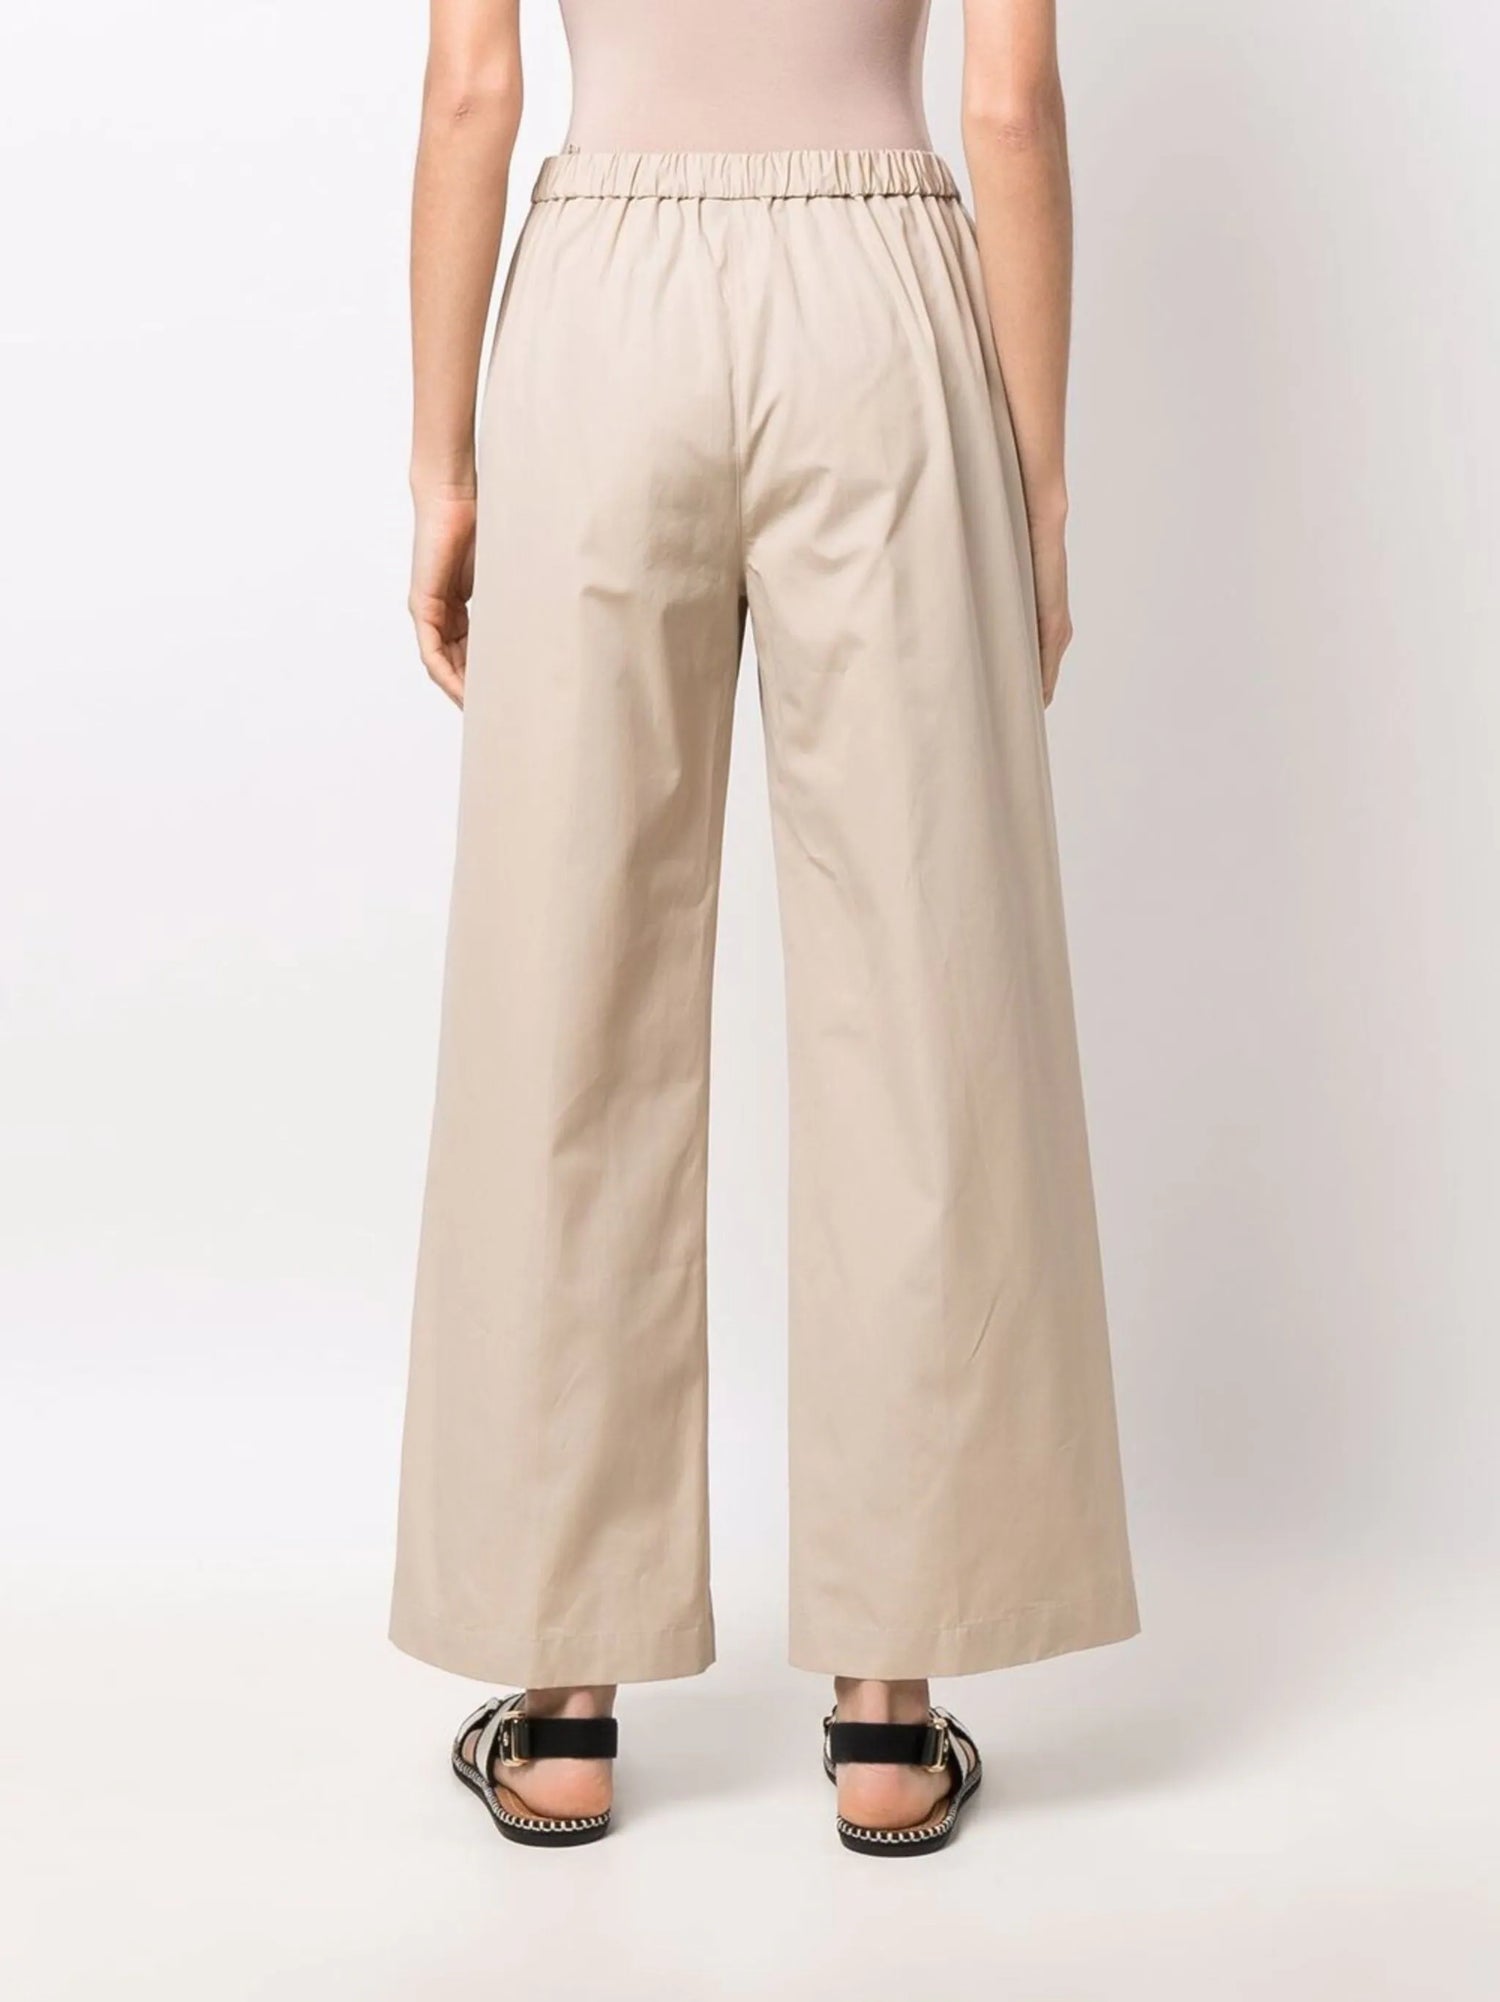 Cotton poplin trousers, beige